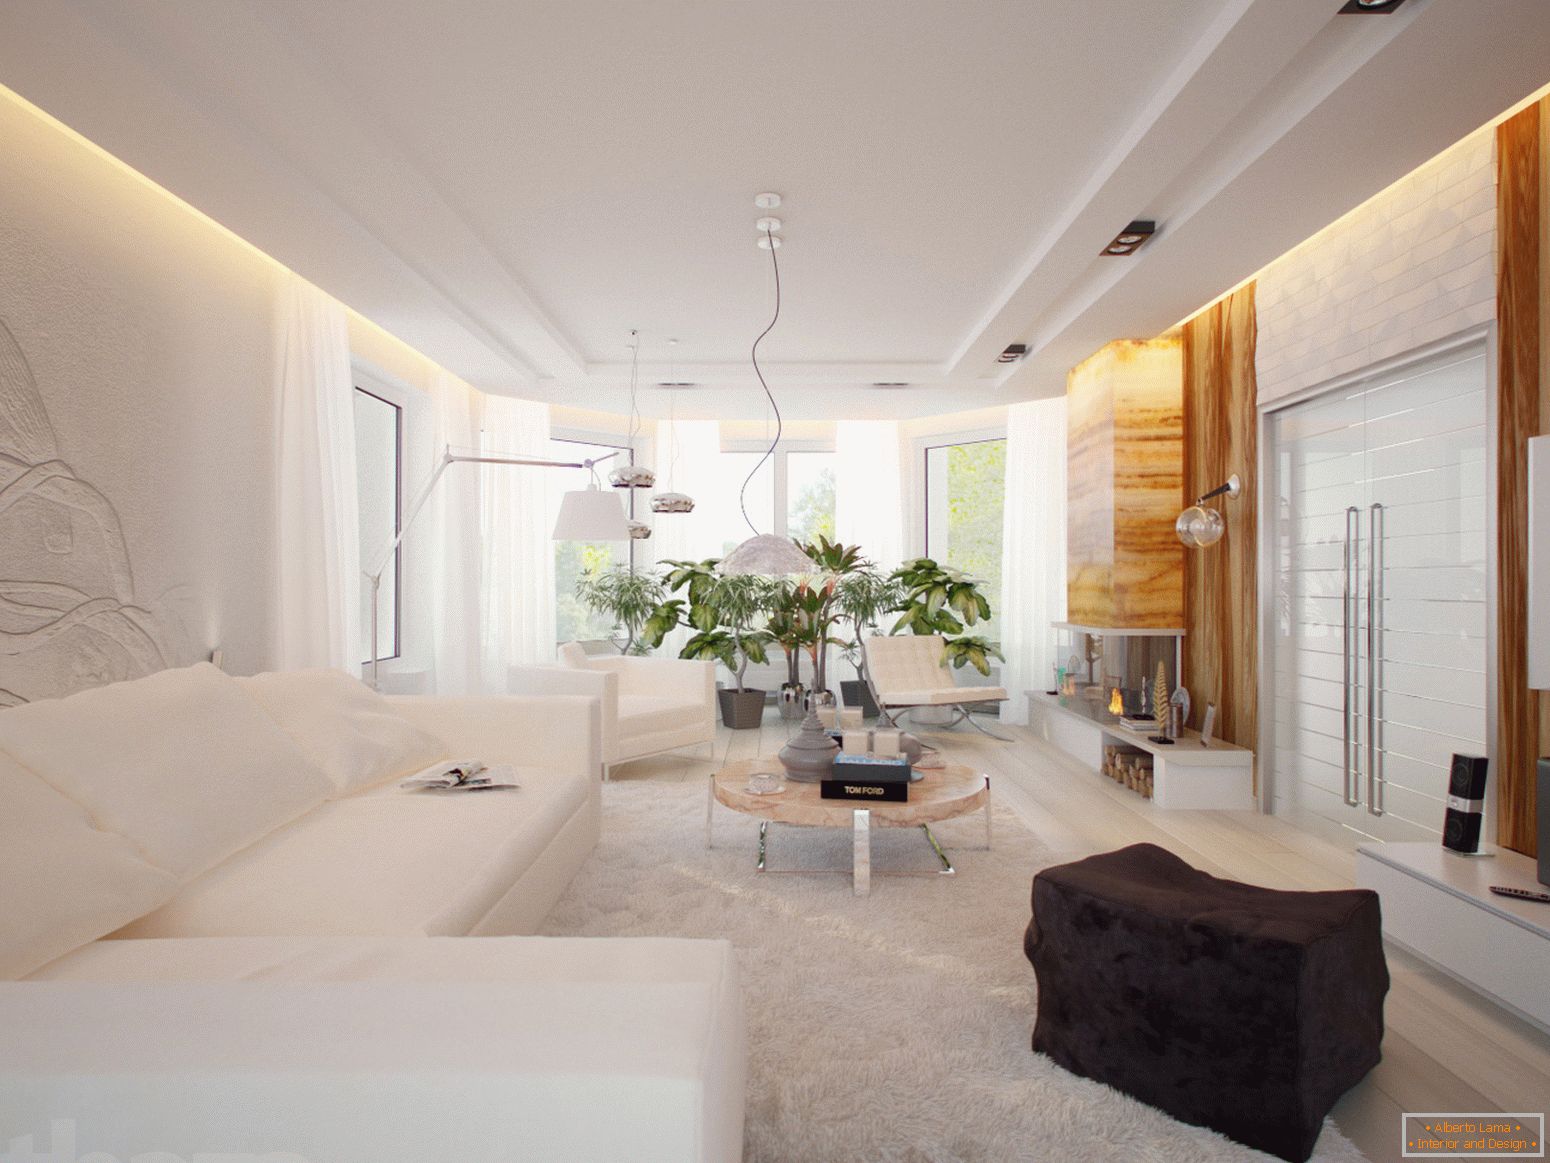 Prostrana i svetla gostinjska soba u minimalističkom stilu je odličan primer pravilno odabranog nameštaja.